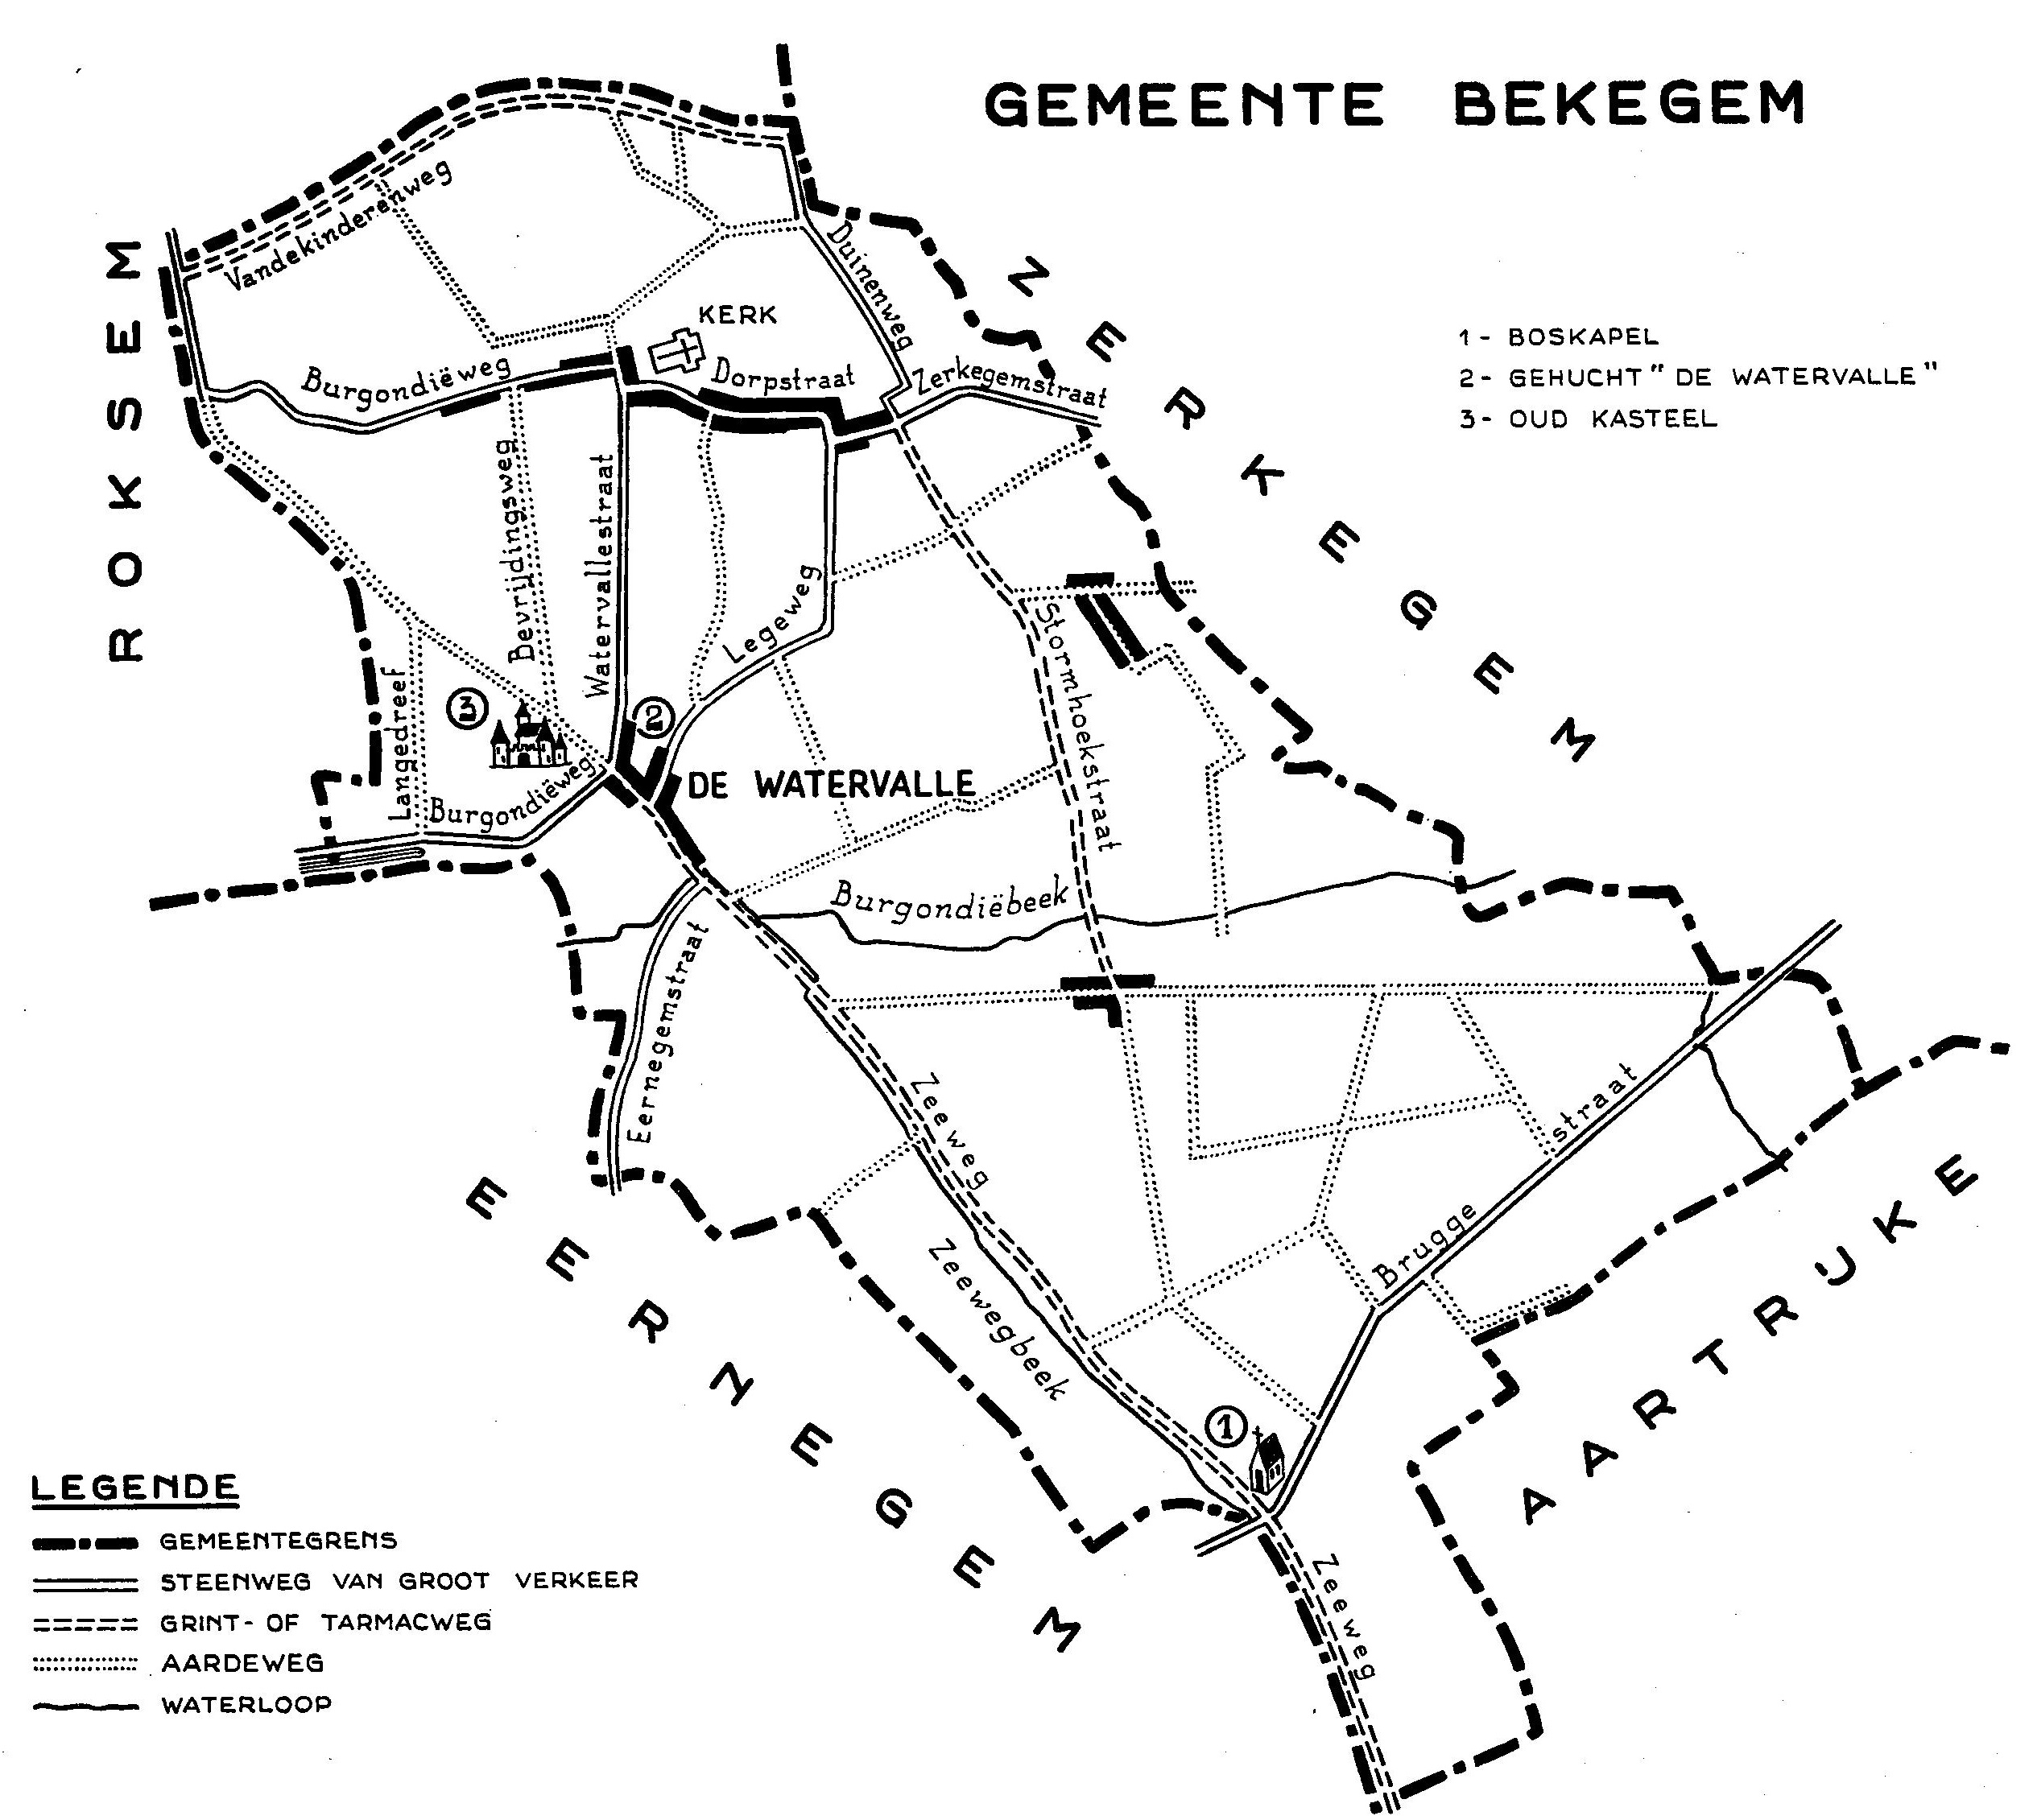 Plan de la commune de Bekegem (1959) │ Le camp des prisonniers italiens était situé dans le bois à côté de la « Boskapel » │ Source : Dit is West-Vlaanderen. Steden – Gemeenten - Bevolking, Deel 1, St-Andries, Flandria, 1959, p.124.